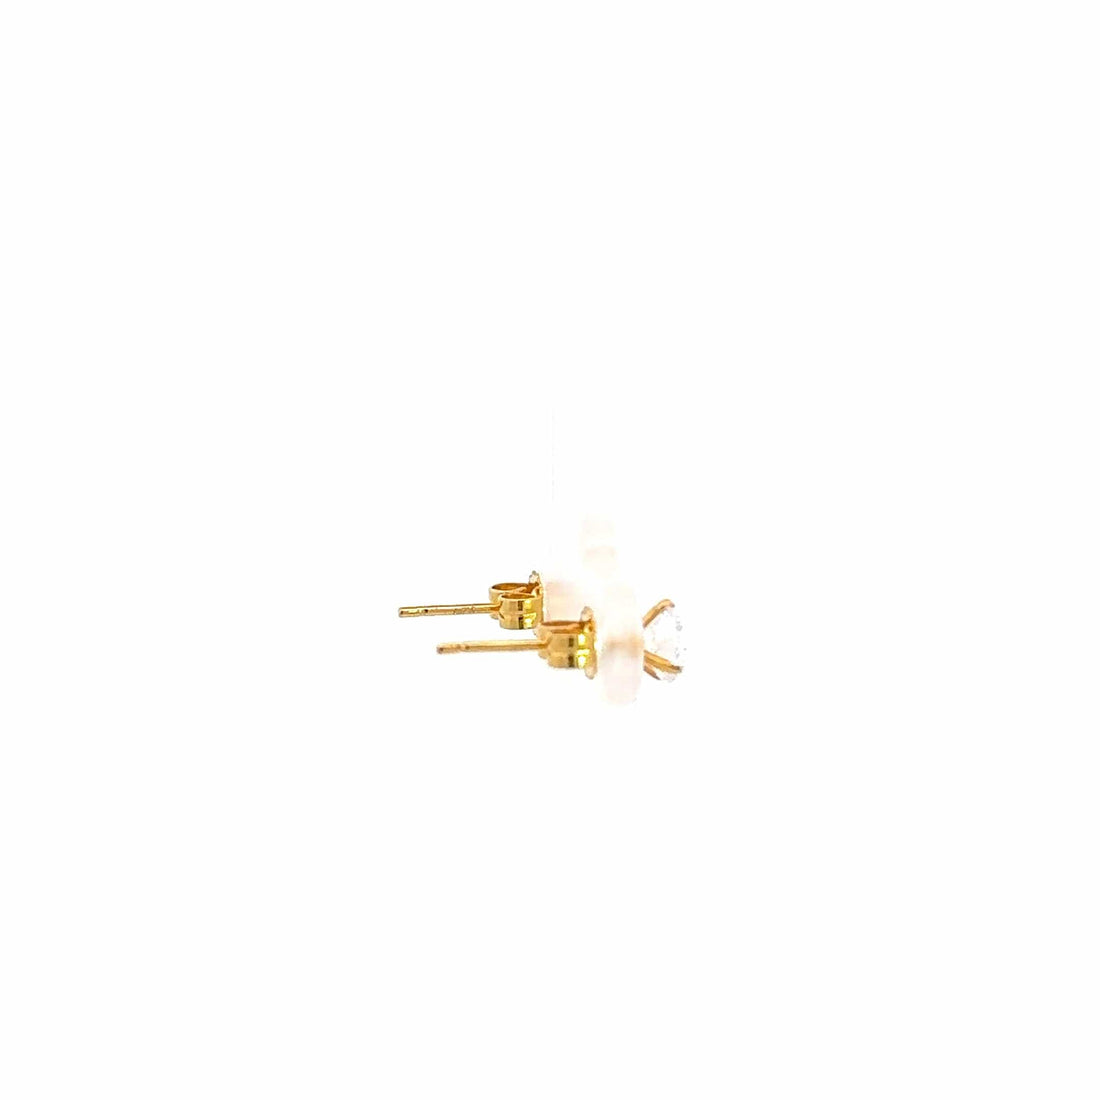 Baikalla Jewelry Gold Gemstone Earrings 18K Yellow Gold Zircon Earrings